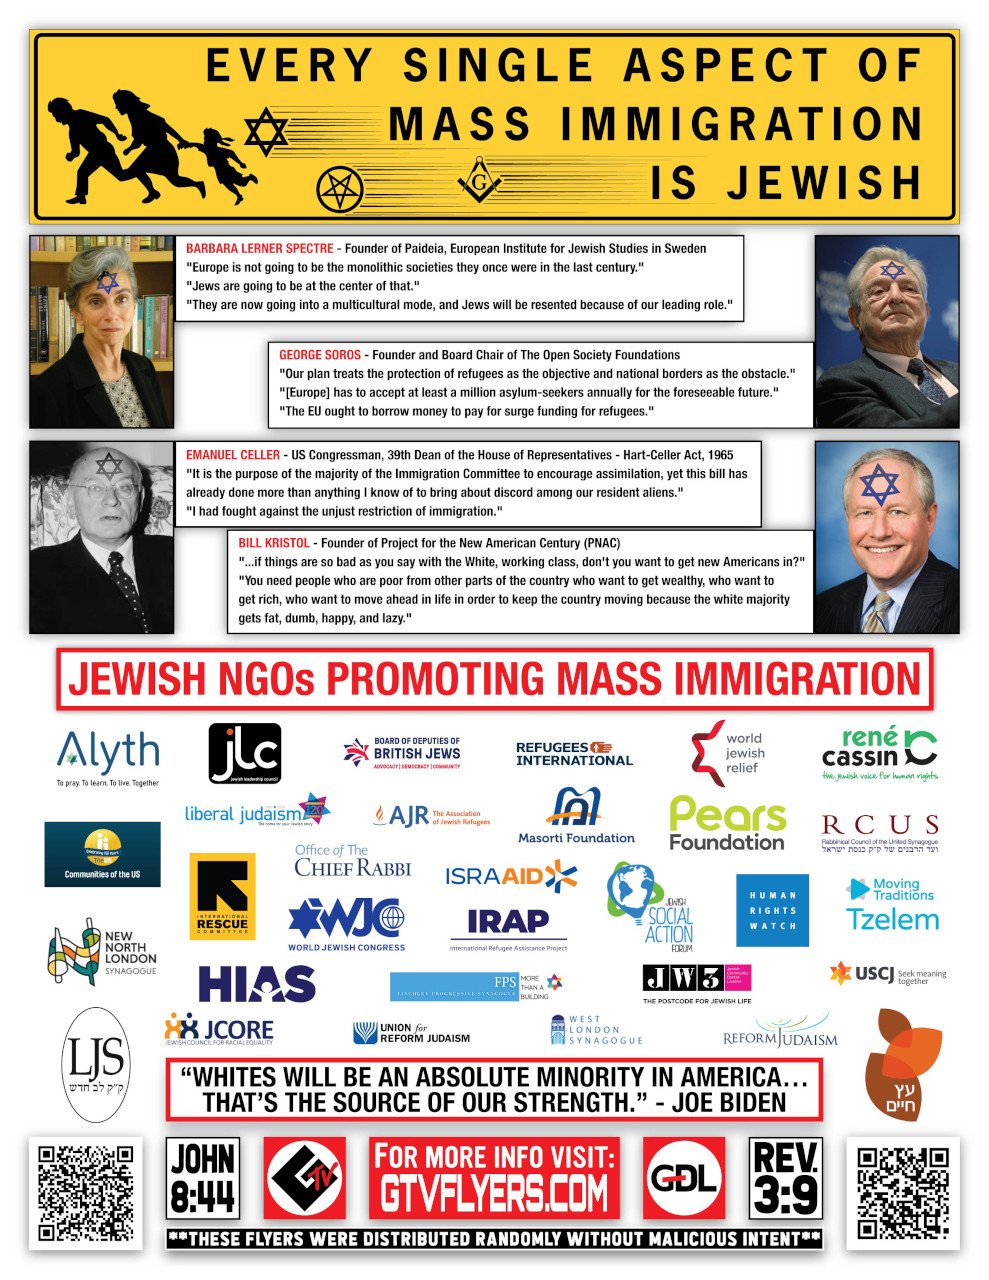 tous-les-aspects-de-l-invasion-migratoire-sont-juifs-et-sionistes.jpg